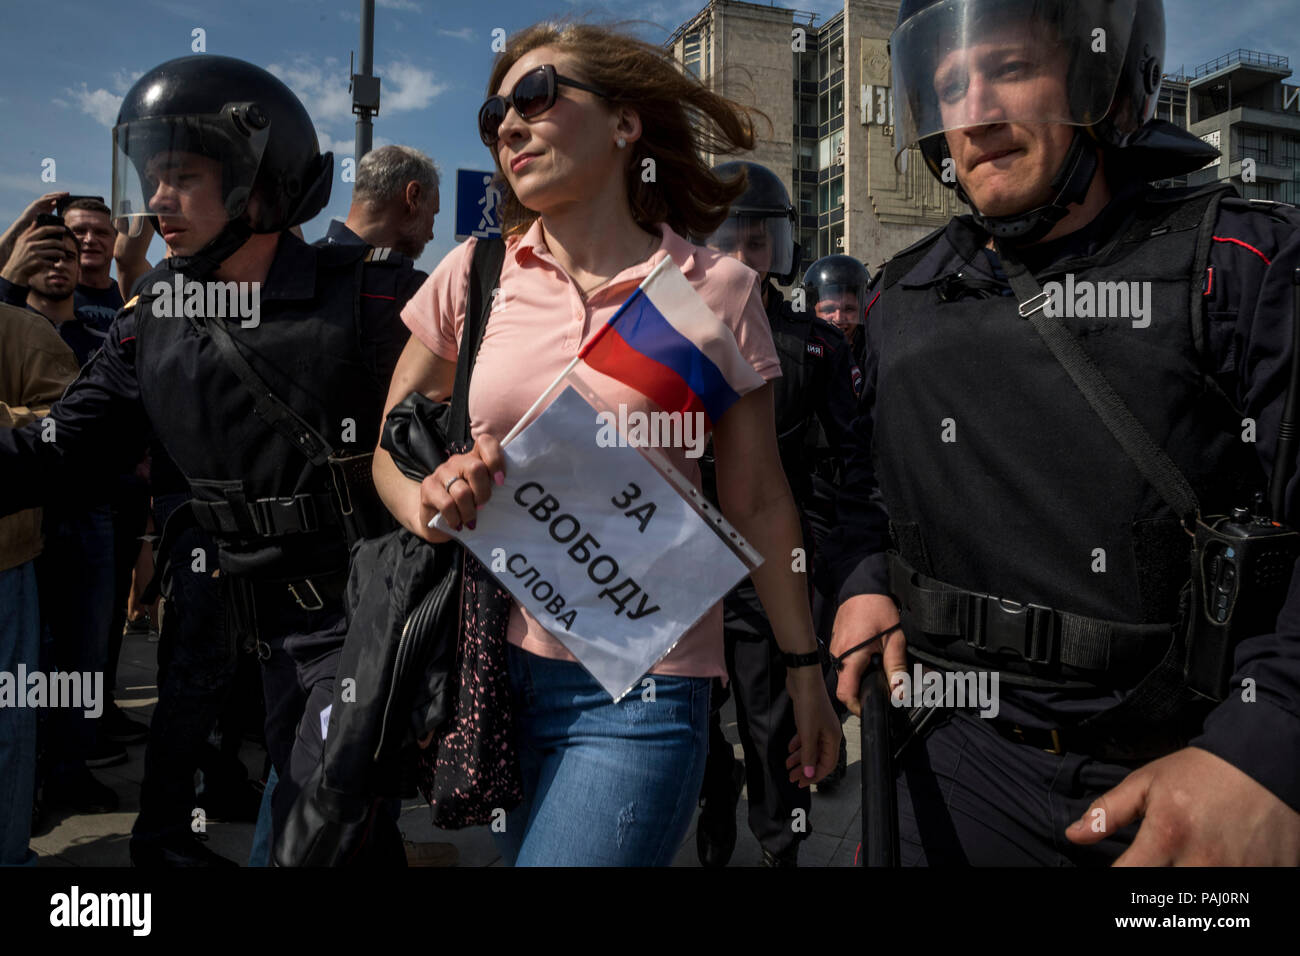 La detención de mujeres con una pancarta con la inscripción "Para la libertad de expresión" durante una manifestación de la oposición en la Plaza Pushkin en el centro de Moscú, Rusia Foto de stock